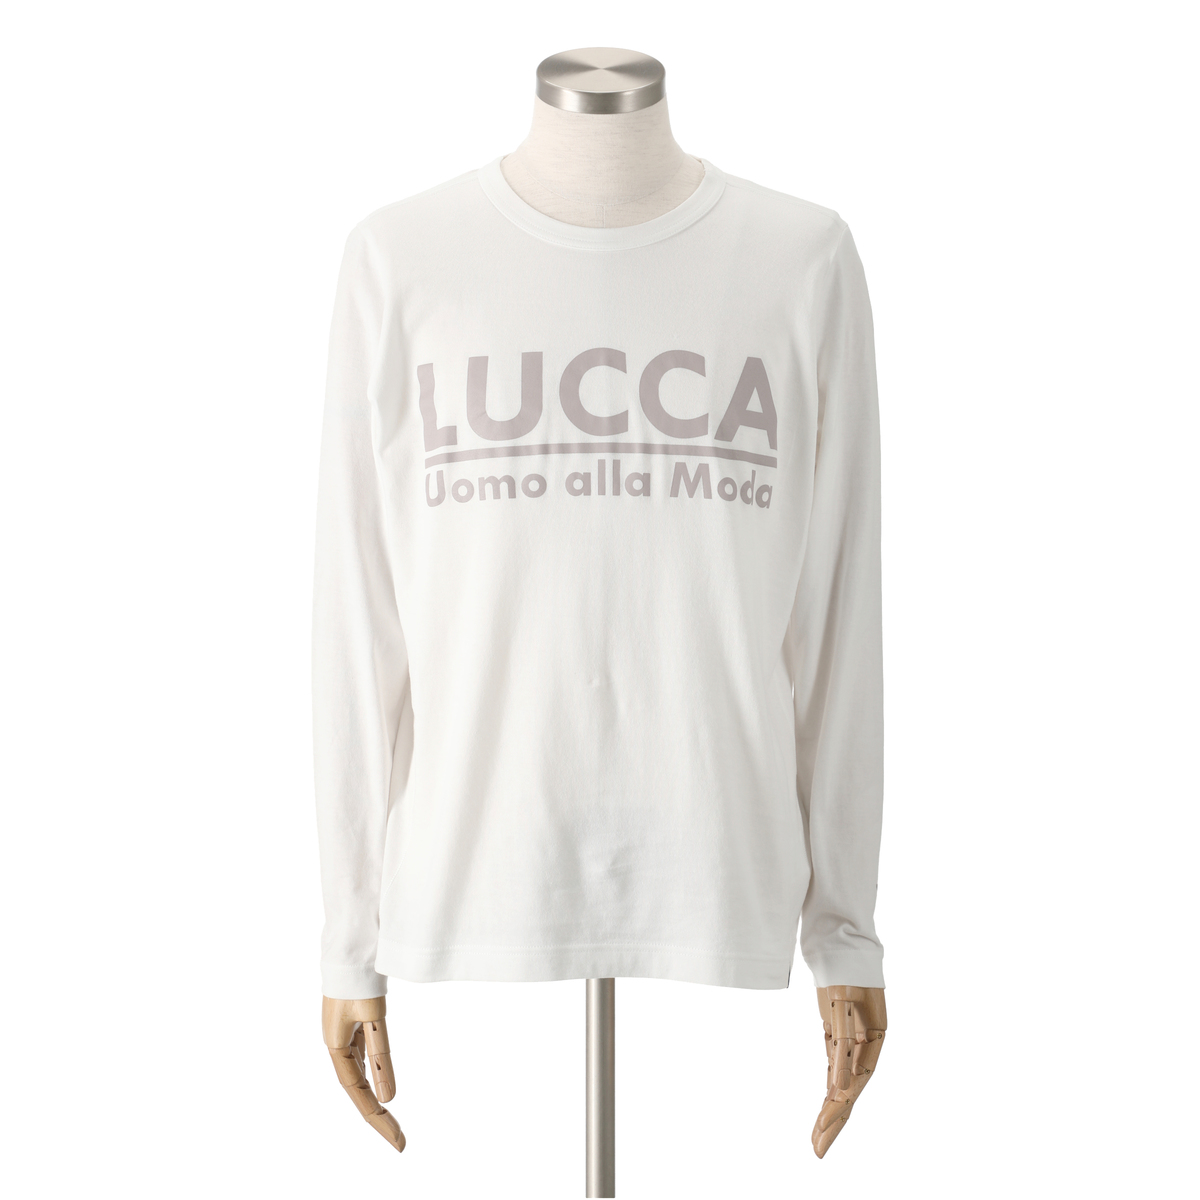 ＜QVCジャパン＞ Lucca Uomo alla moda ロングスリーブプリントTシャツ ＜サイズ＞ LL ＜カラー＞ ホワイト